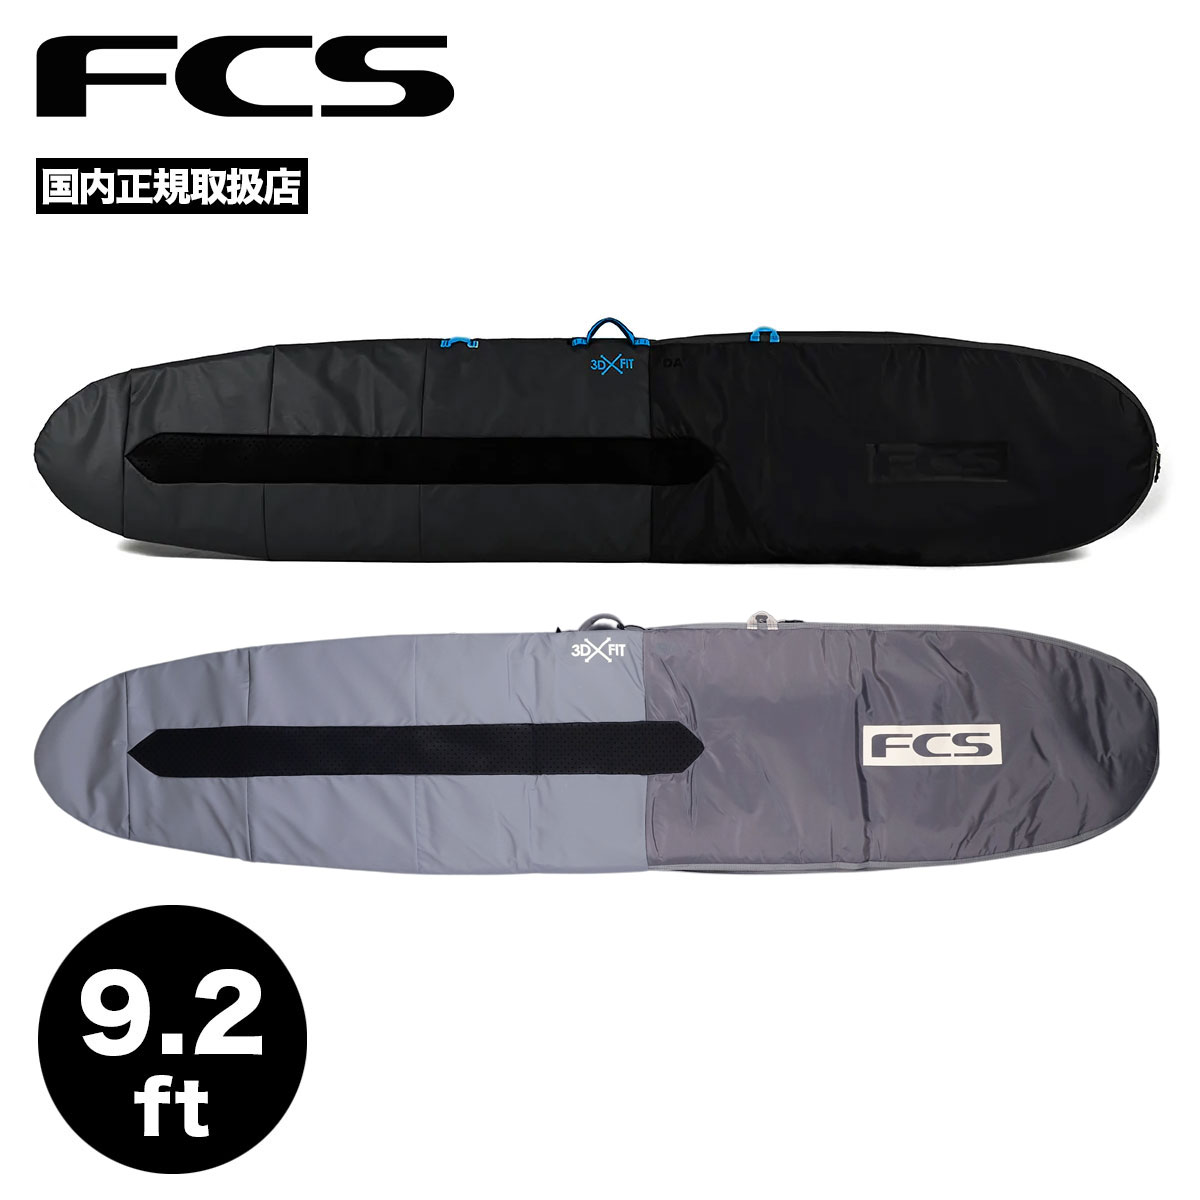 FCS エフシーエス サーフィン ハードケース デイ ロングボード ボードケース ブランド サイズ 9.2 ハードカバー DAY LONG BOARD【BDY-092-LB-BLK】【BDY-092-LB-SGY】